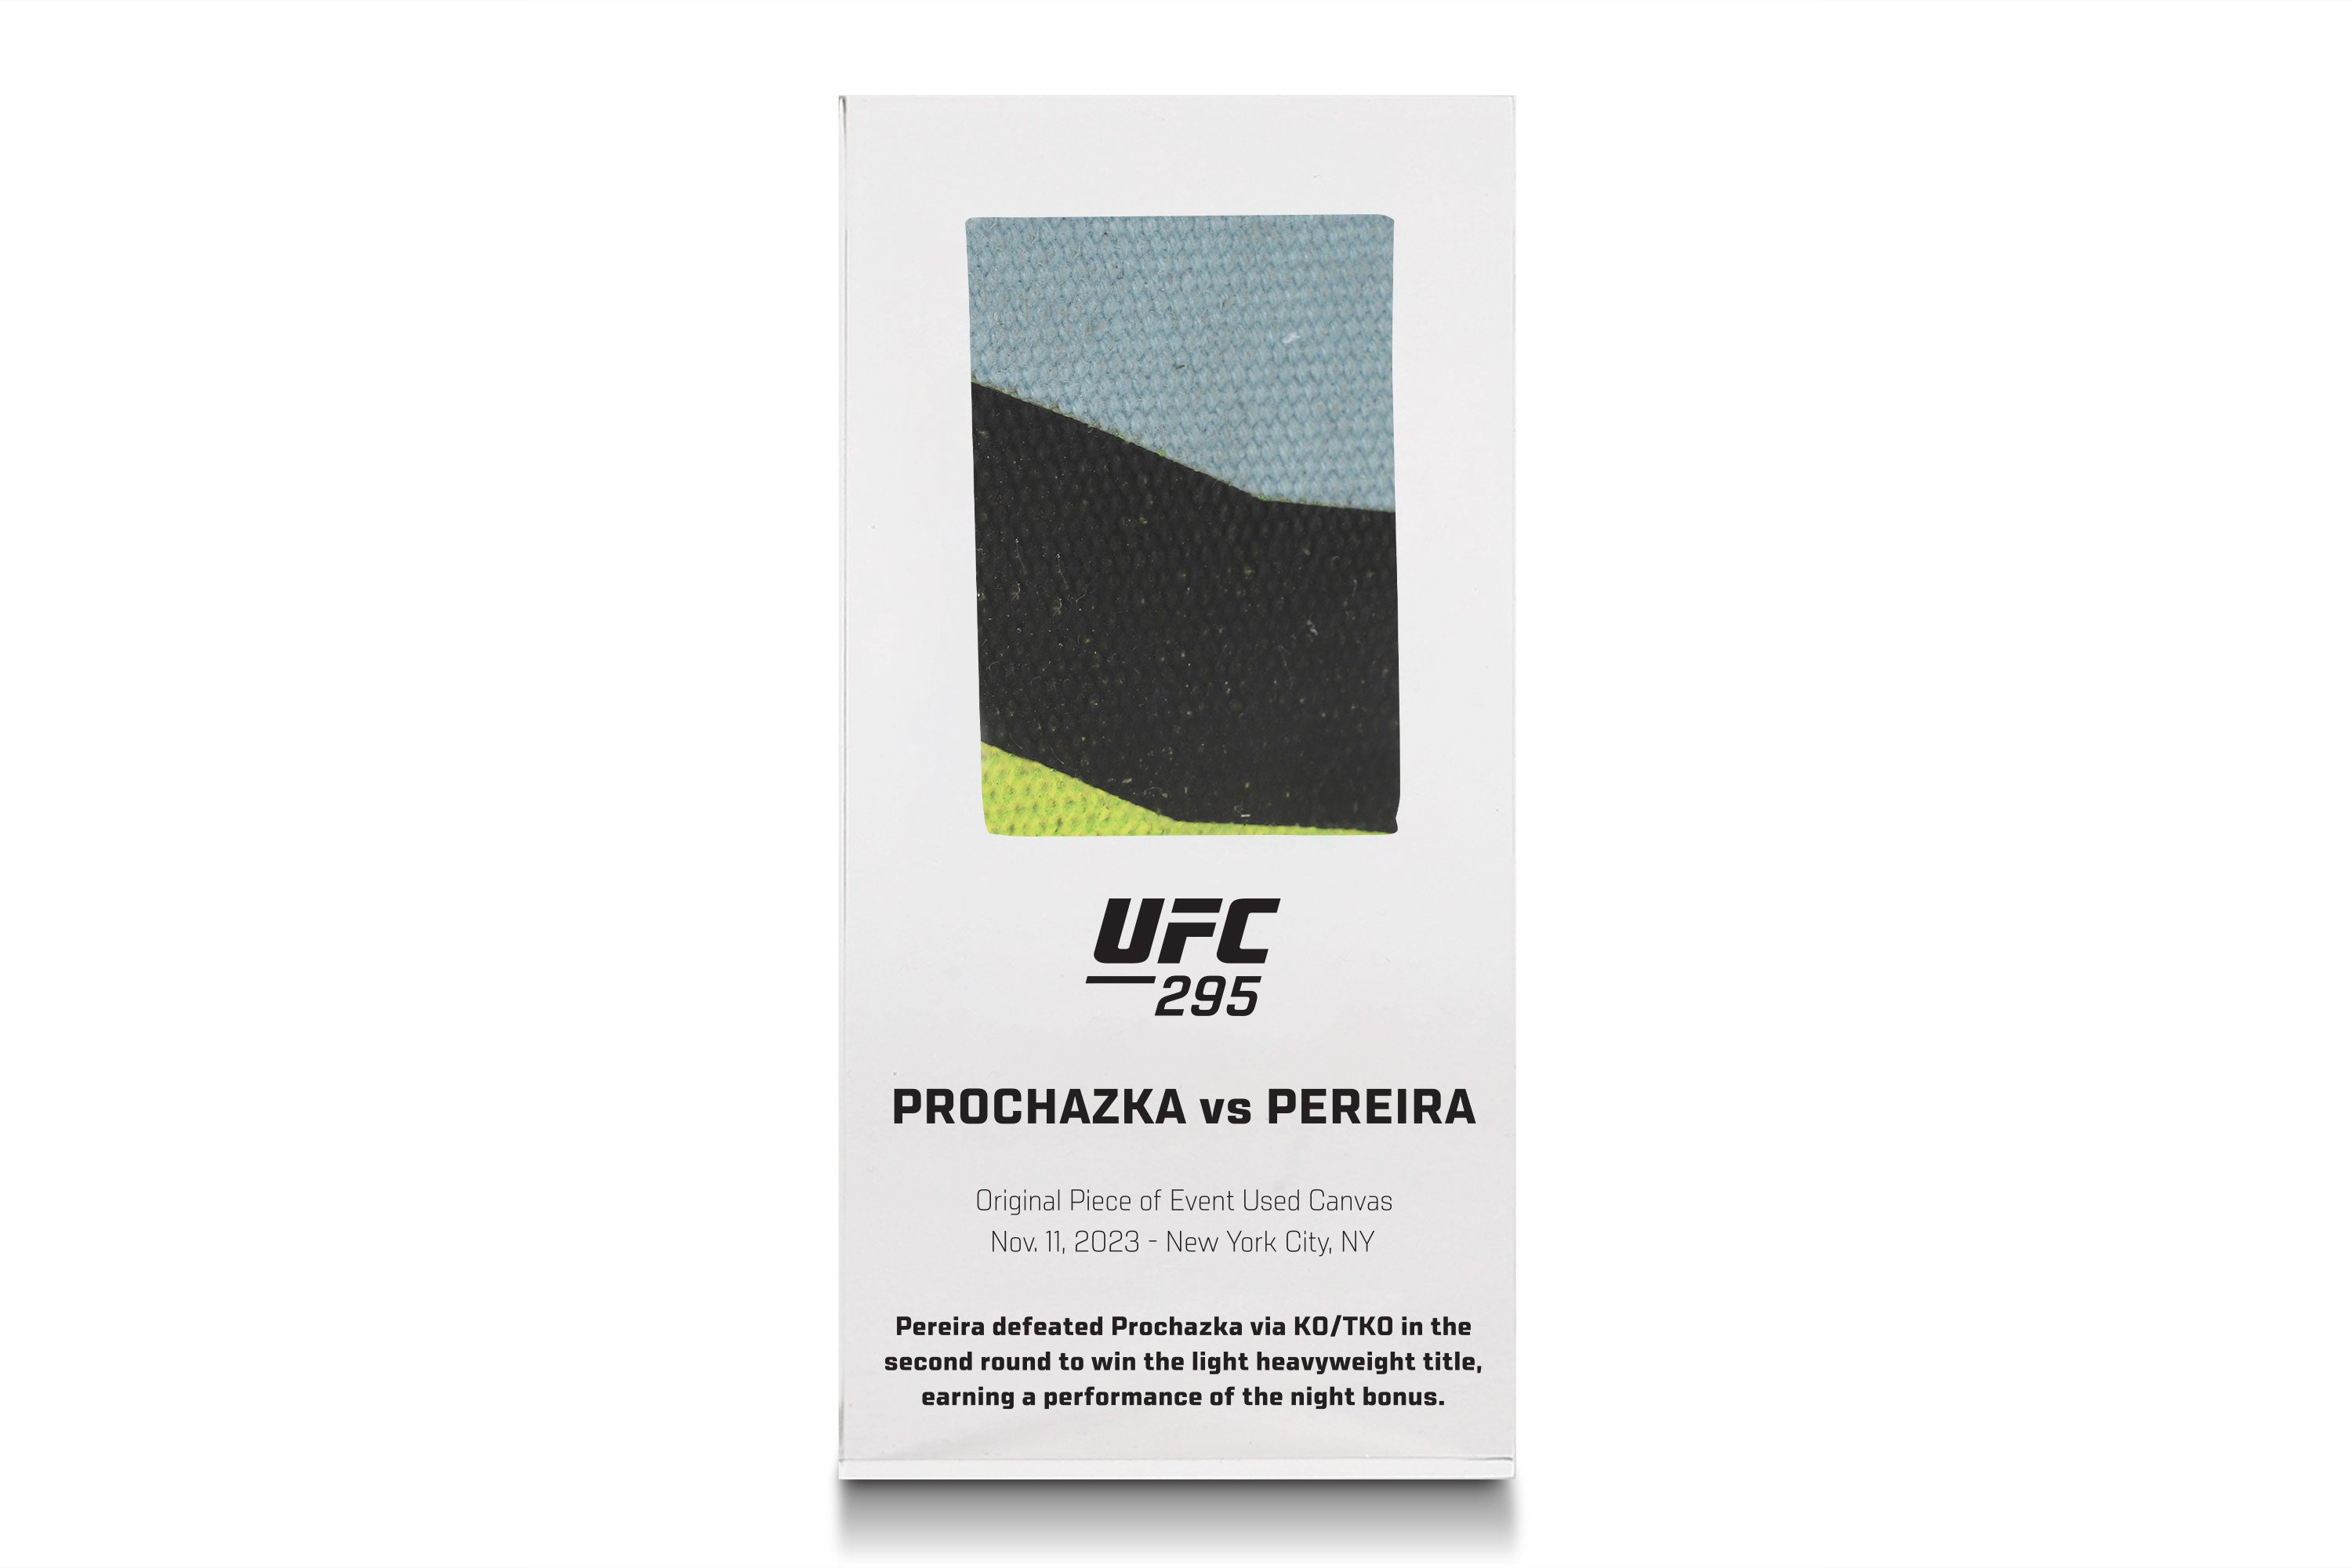 UFC 295: Prochazka vs Pereira Canvas in Acrylic